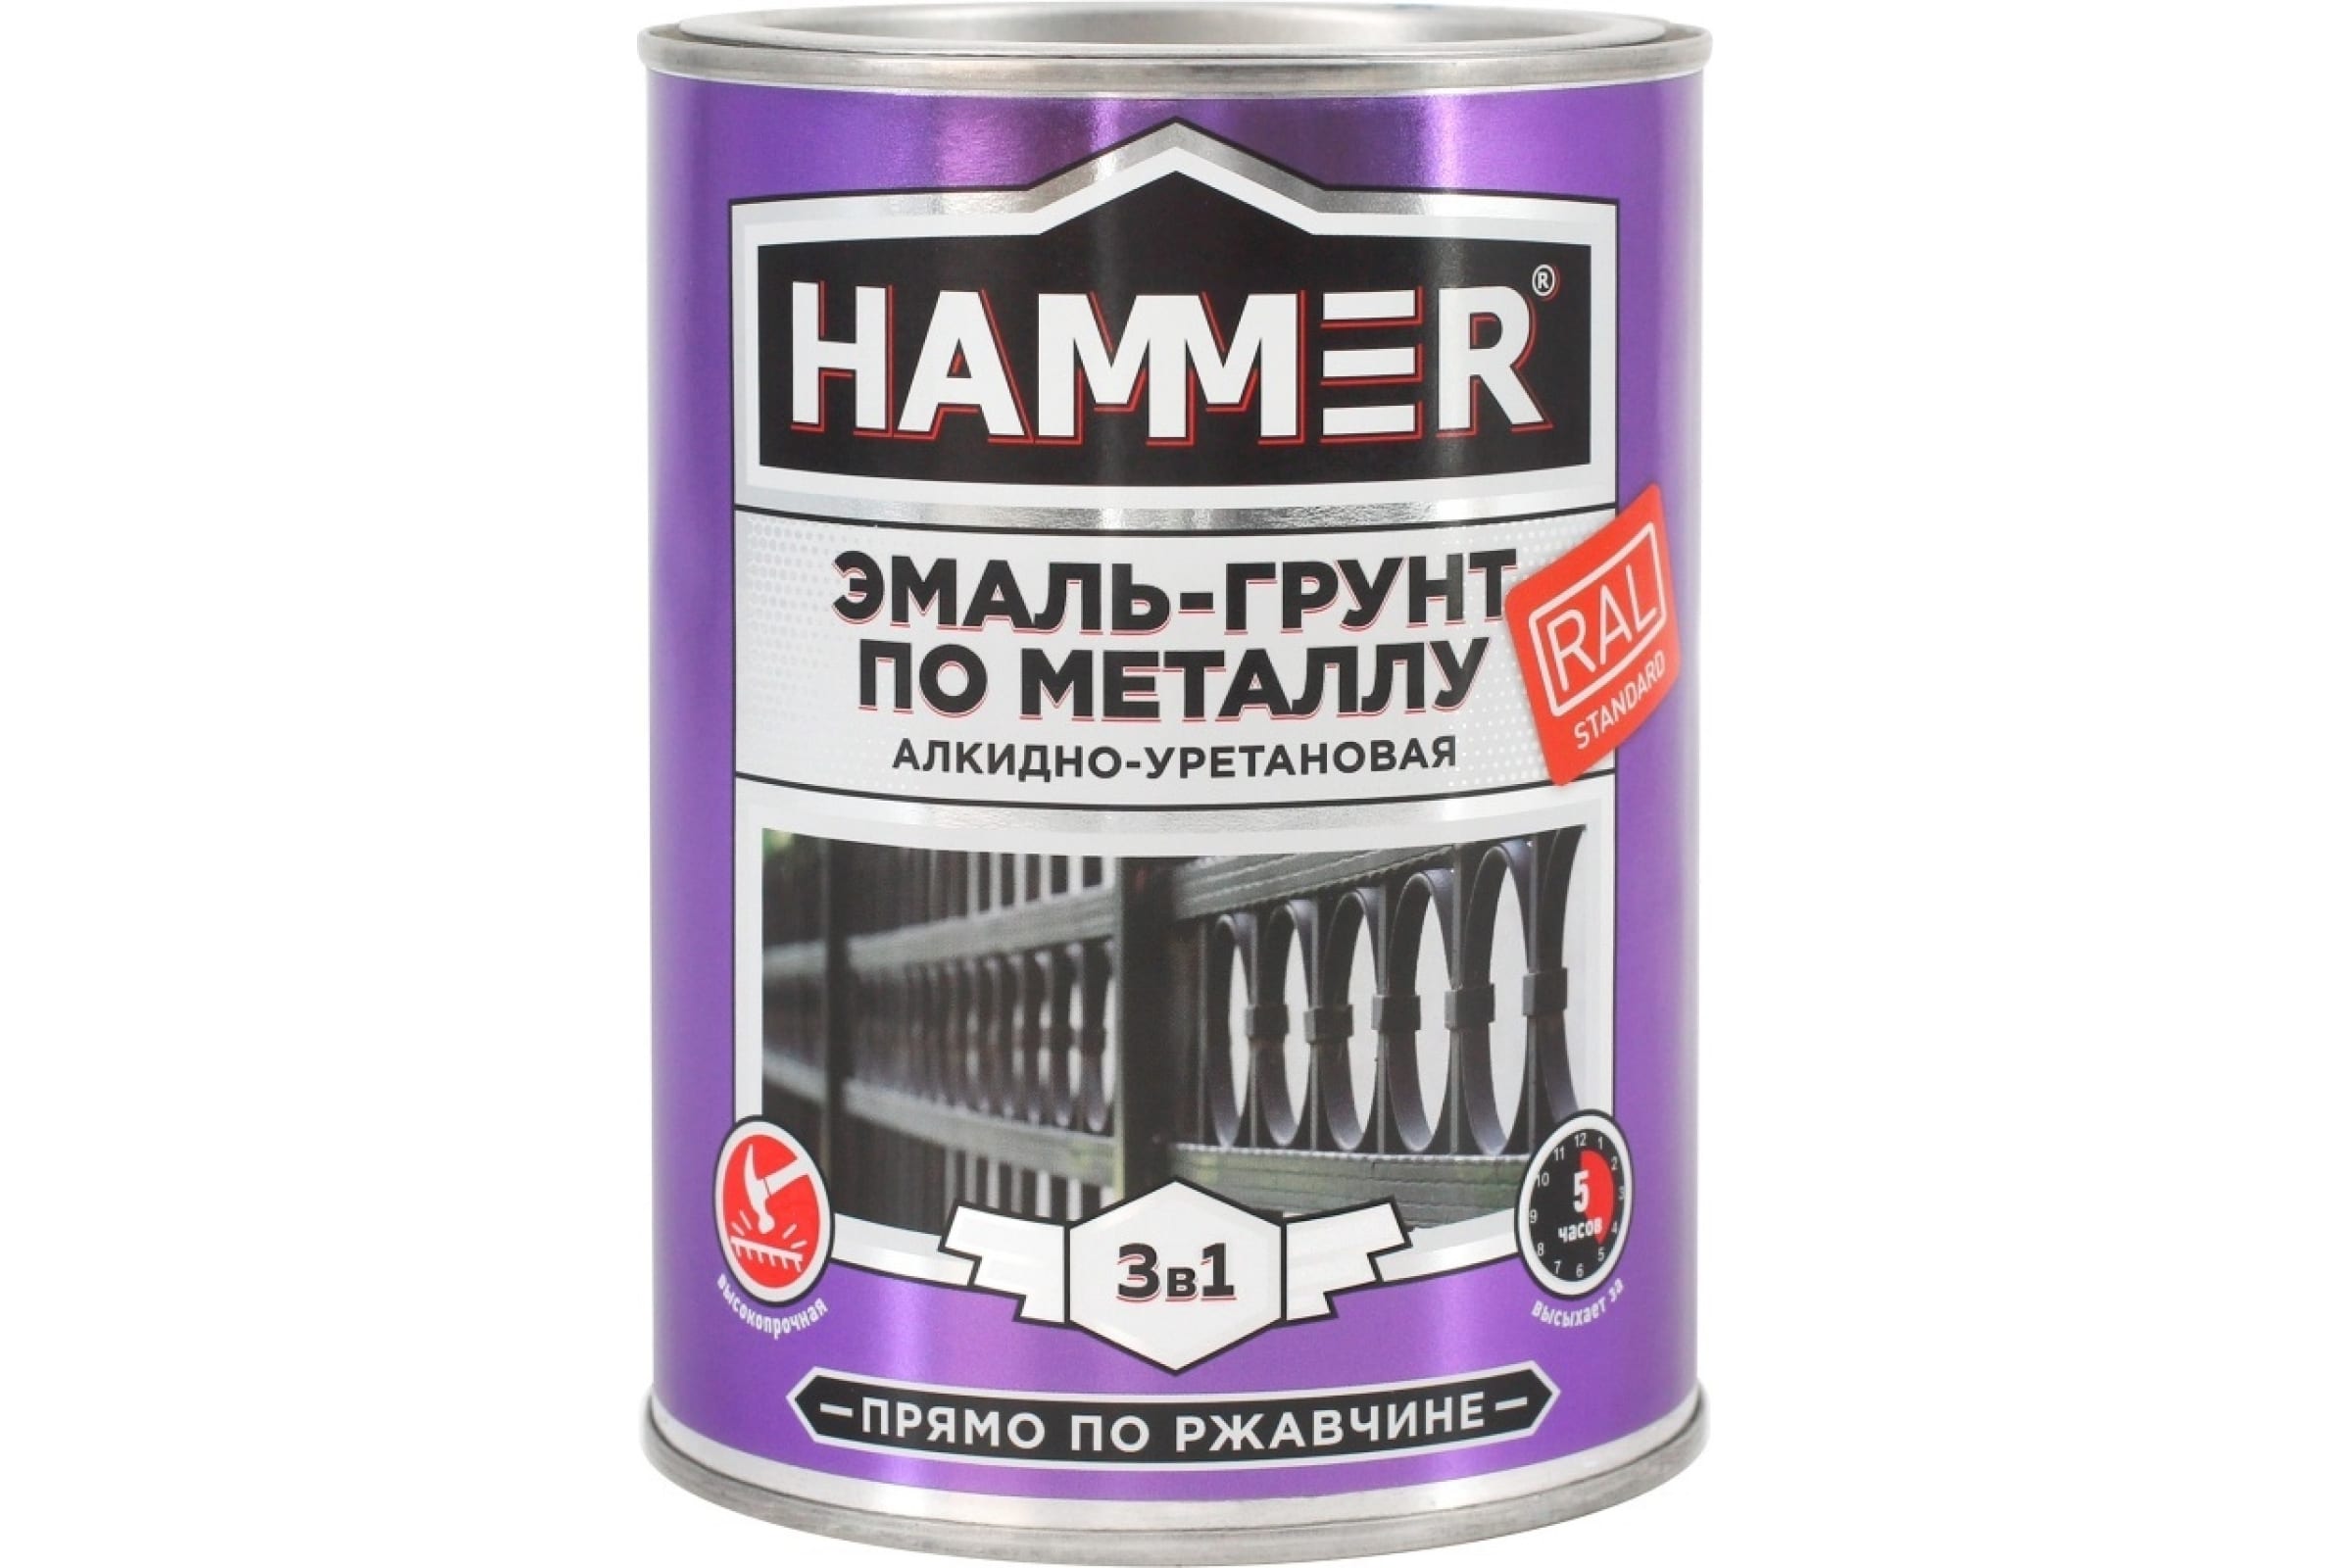 фото Hammer эмаль-грунт по металлу 3 в 1 ау п/гл ral 1023 трансп. желт. 0,9 кг / 6 эк000133628